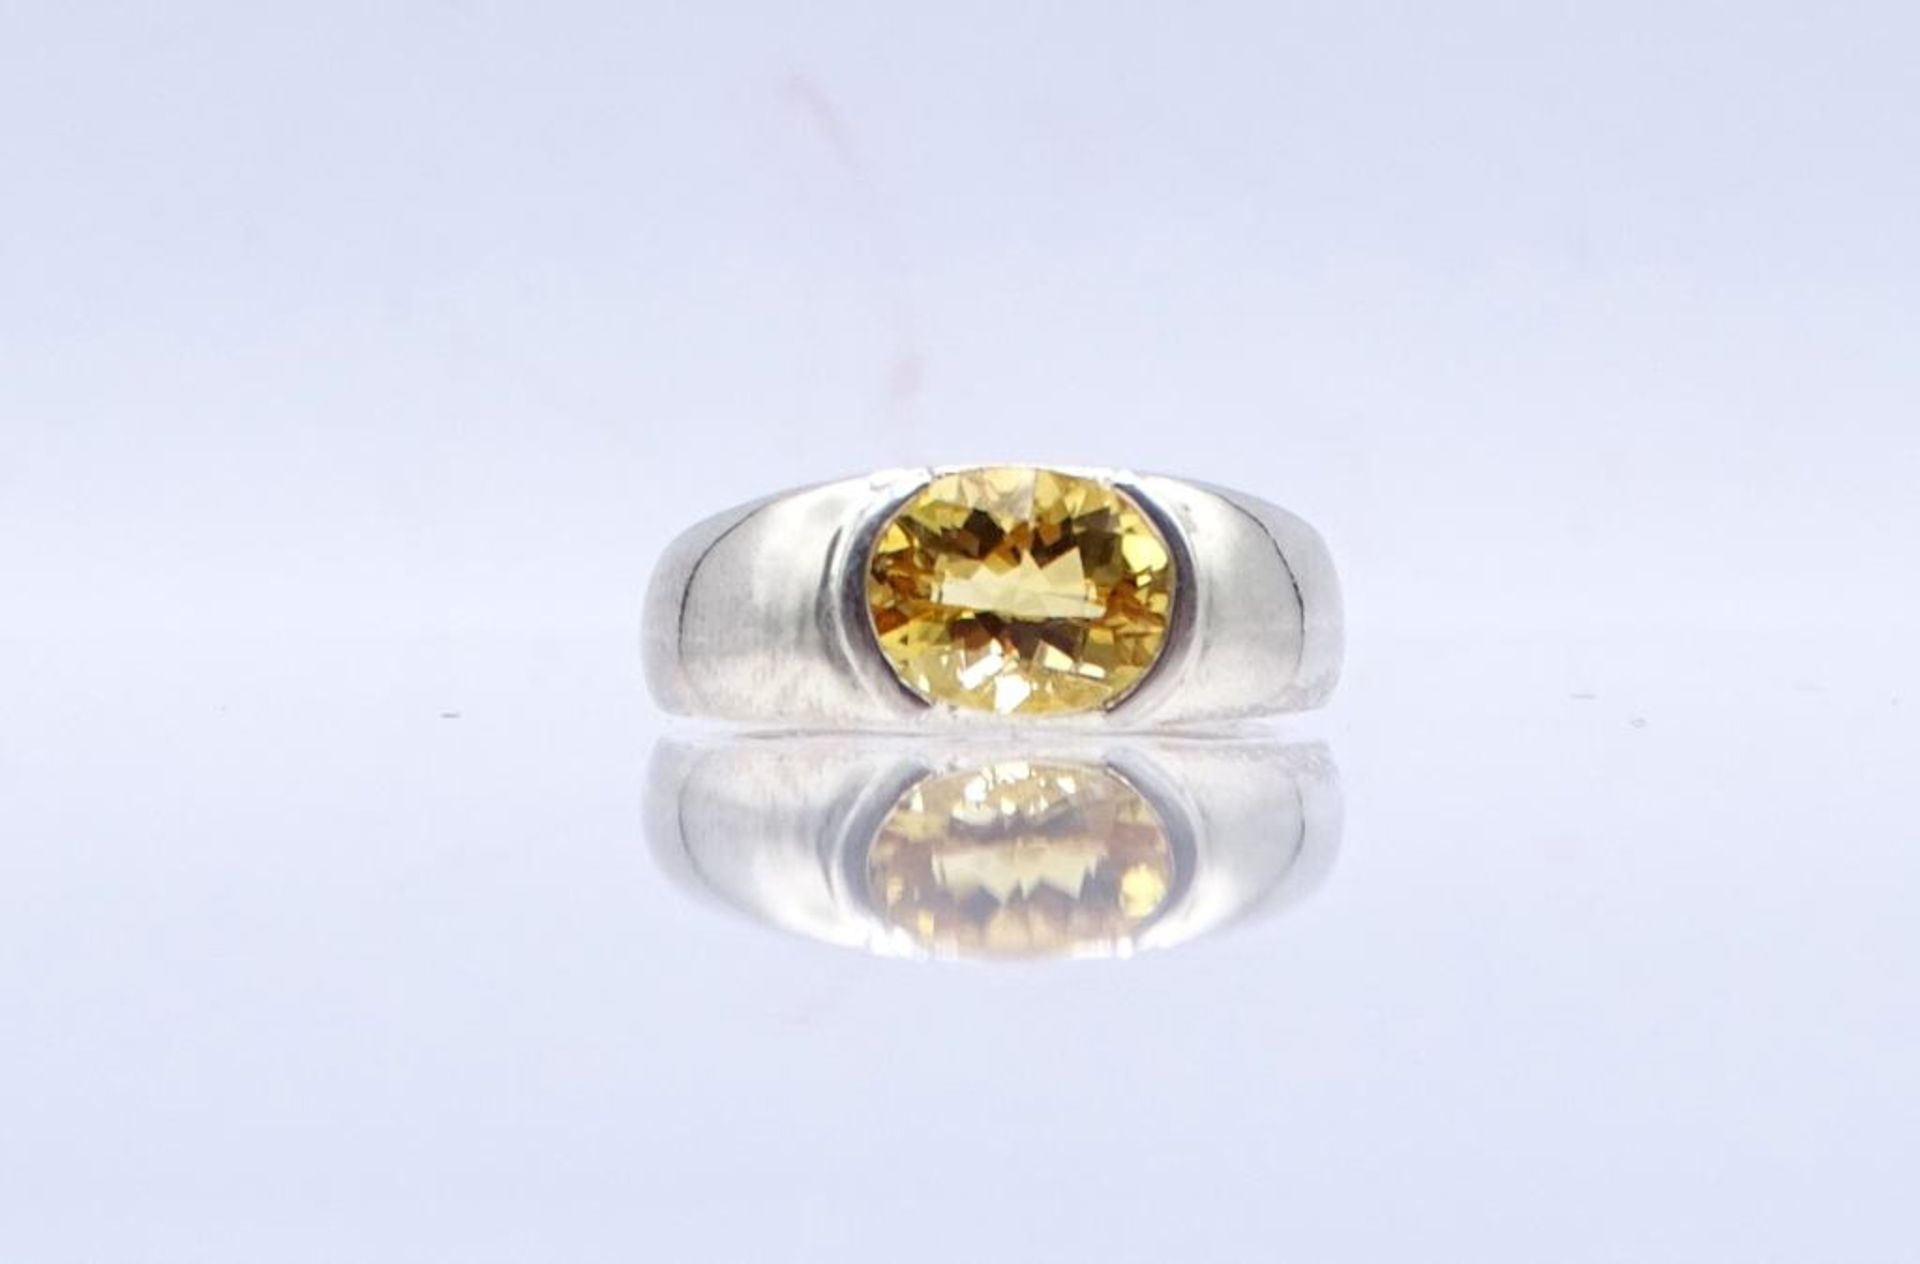 Citrin-Silber-Ring,Silber 925/000, 4,7gr., RG 61- - -22.61 % buyer's premium on the hammer